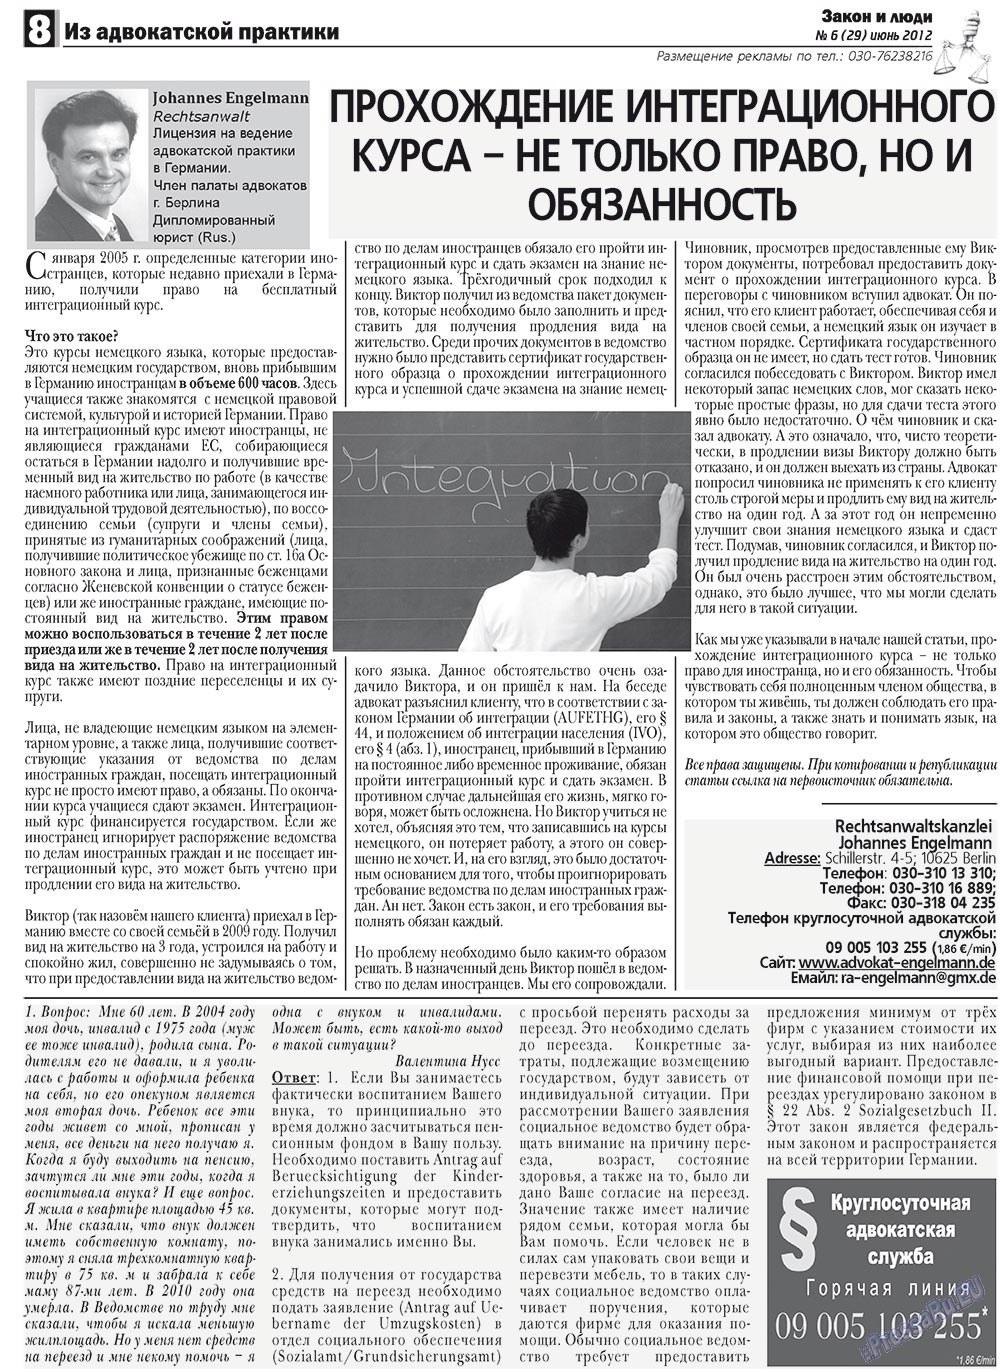 Закон и люди, газета. 2012 №6 стр.8